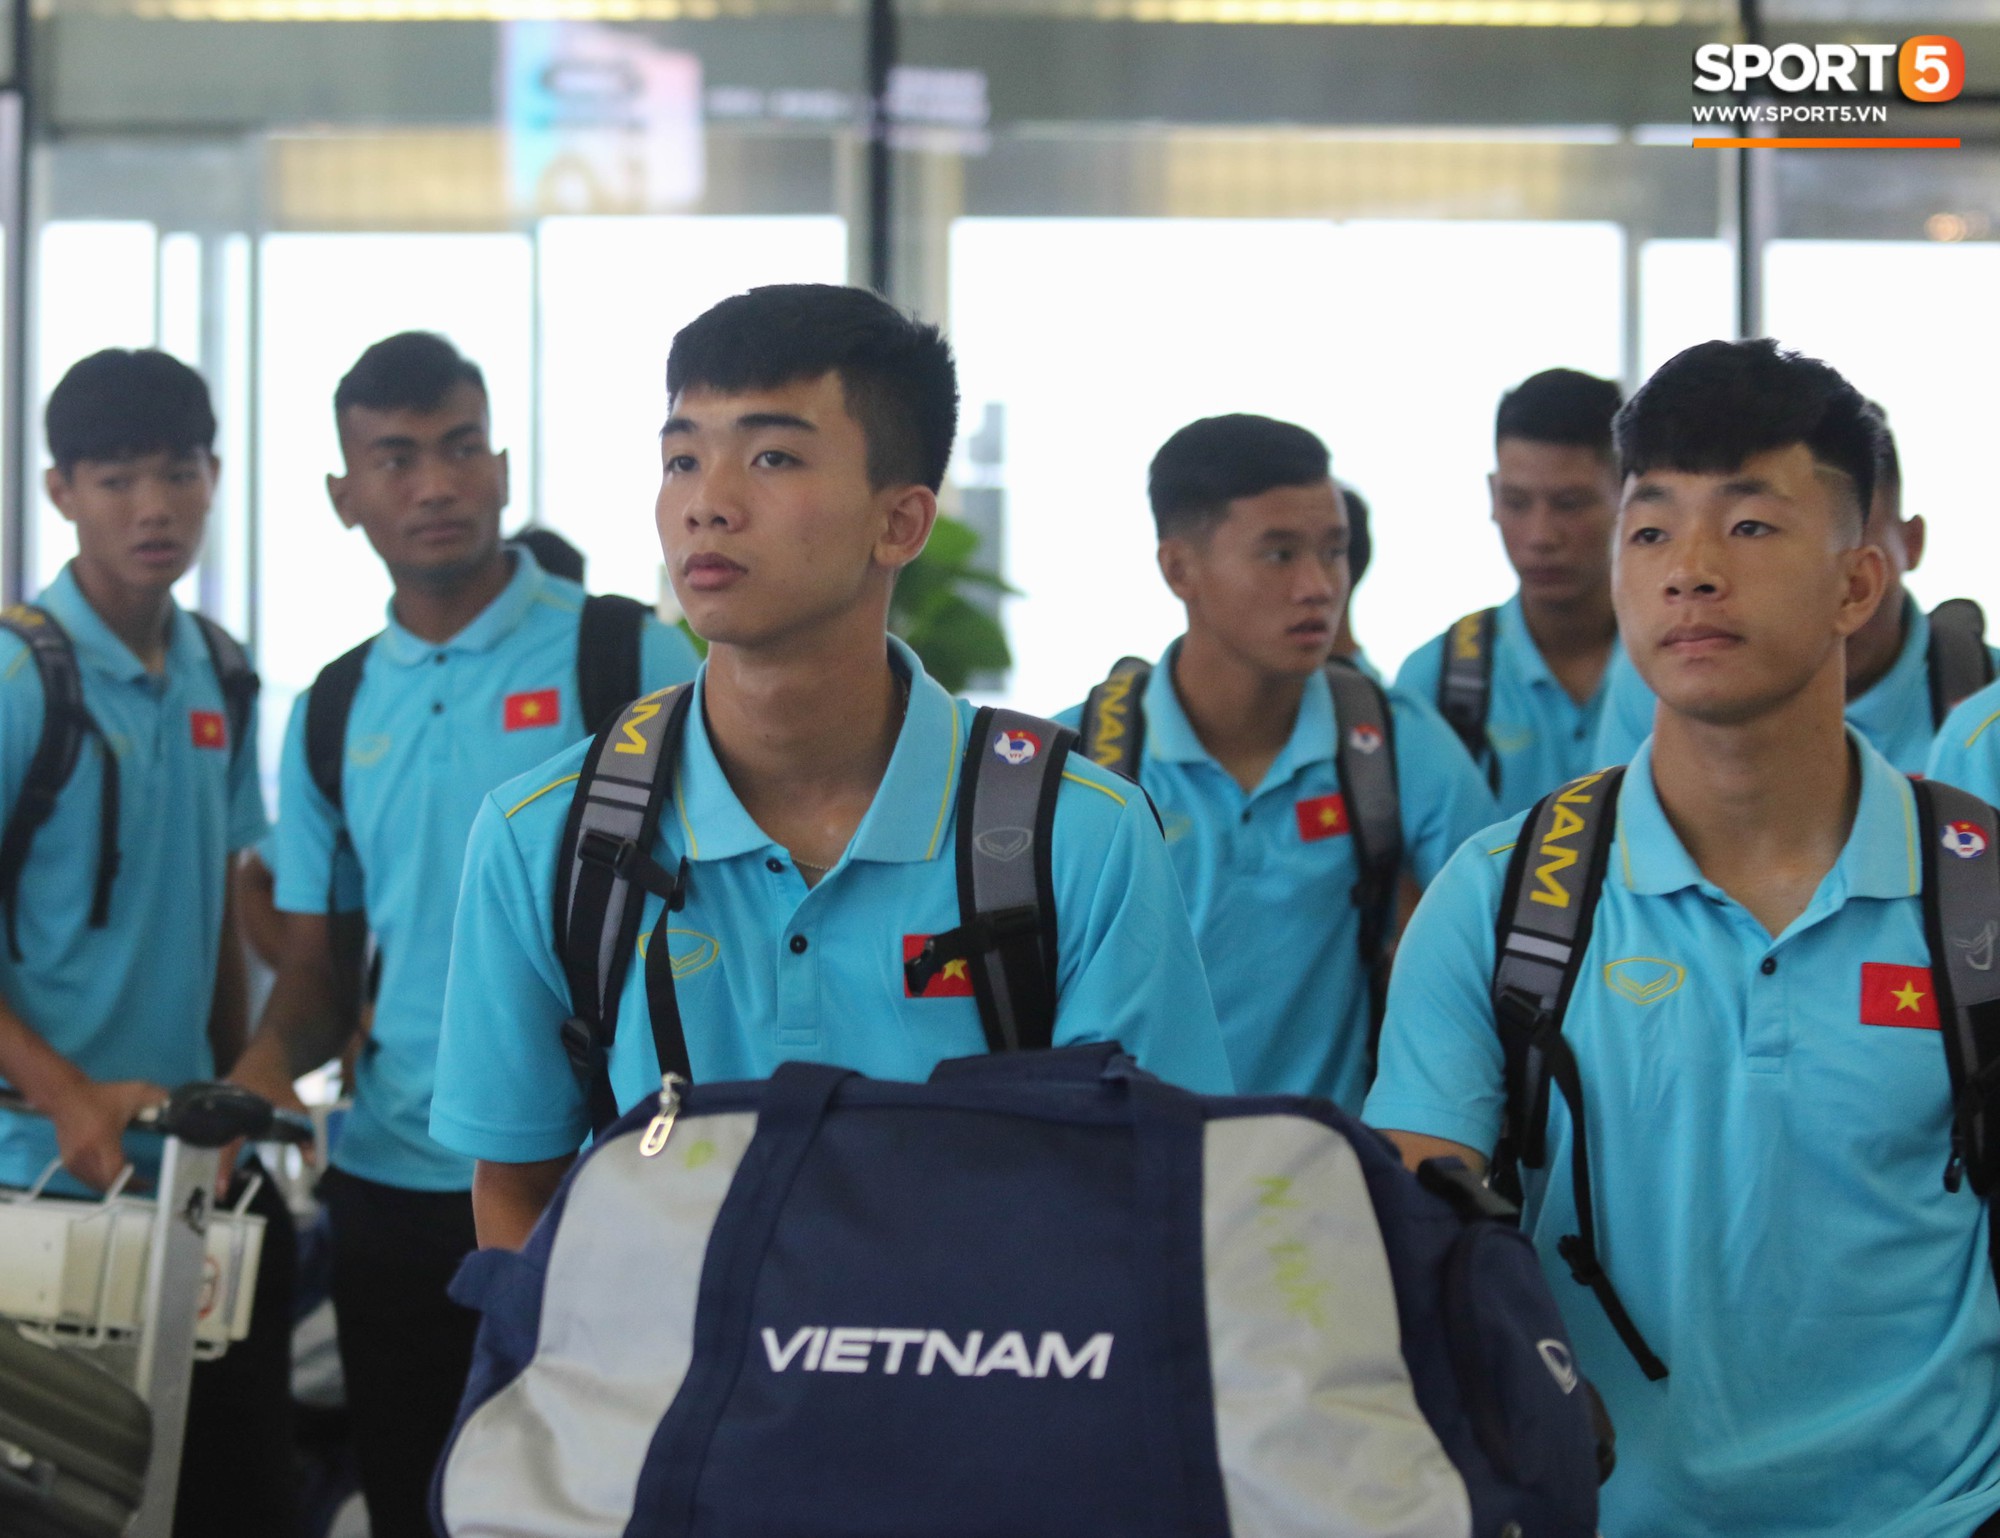 Dàn tuyển thủ U18 Việt Nam rủ nhau đảo ngói khá bảnh bao trước giờ lên đường tập huấn tại Nhật Bản - Ảnh 9.